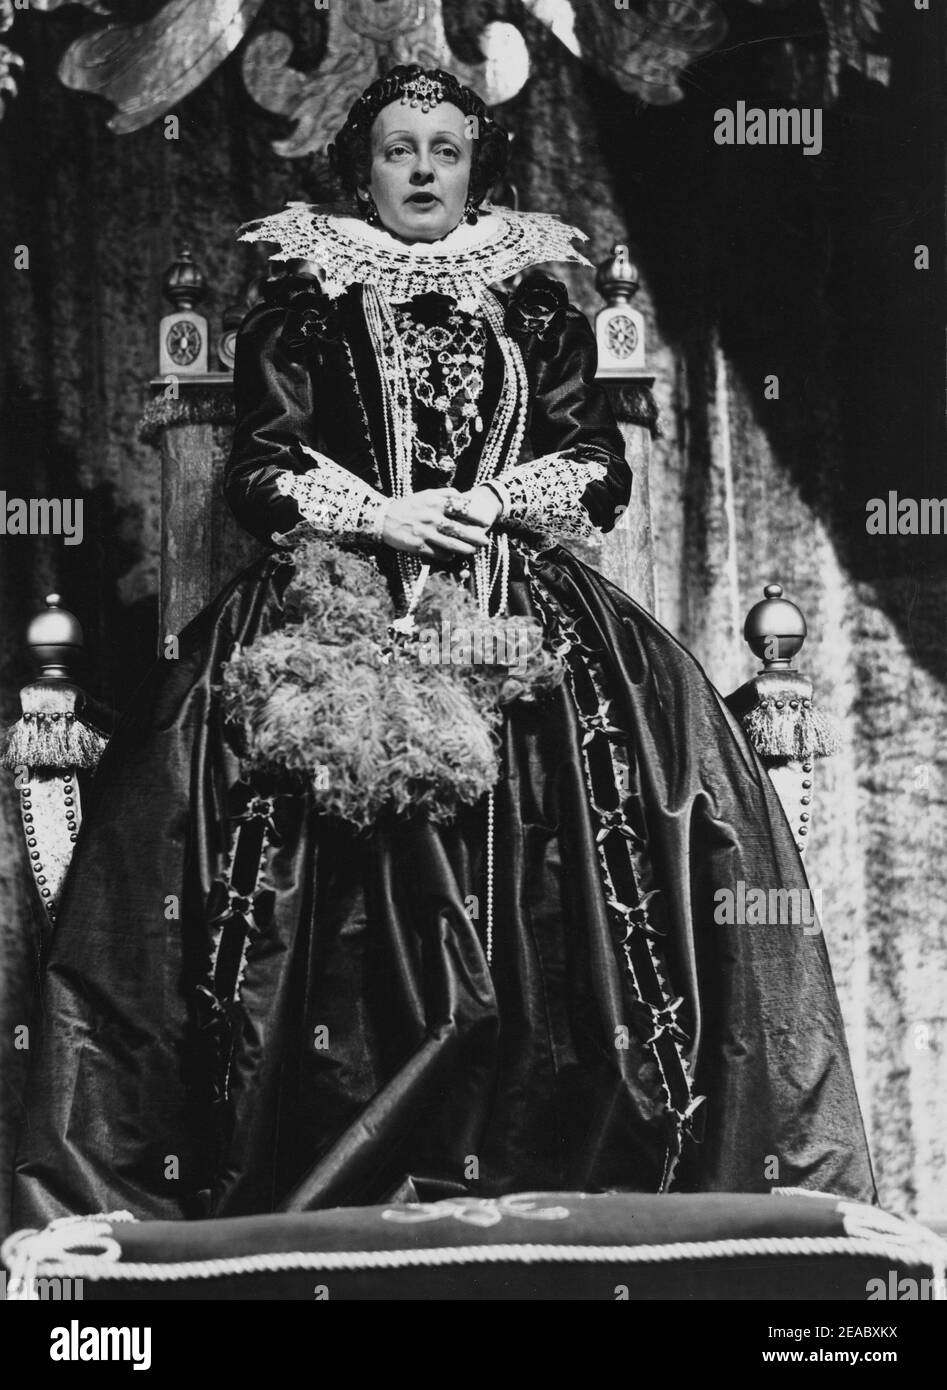 1939 , USA : The movie actress  BETTE  DAVIS ( 1908 -  1989 ) as the Queen of England Elizabeth I  in THE PRIVATE LIVES OF ELIZABETH AND ESSEX    ( Il conte di Essex  ) by  Michael Curtiz  , pubblicity photo Warner Bros by Bert Six  - CINEMA - FILM - attrice - portrait - ritratto - Regina Elisabetta I d' Inghilterra - collar - colletto - pizzo - lace - perle - perla - collana - ncklace pearls - pearl - raso - satin - trono - parrucca - wig - gioiello - gioielli - bijoux - jewellery - jewel - jewels  - ventaglio - fan - piume di struzzo - feathers  ----  Archivio GBB Stock Photo